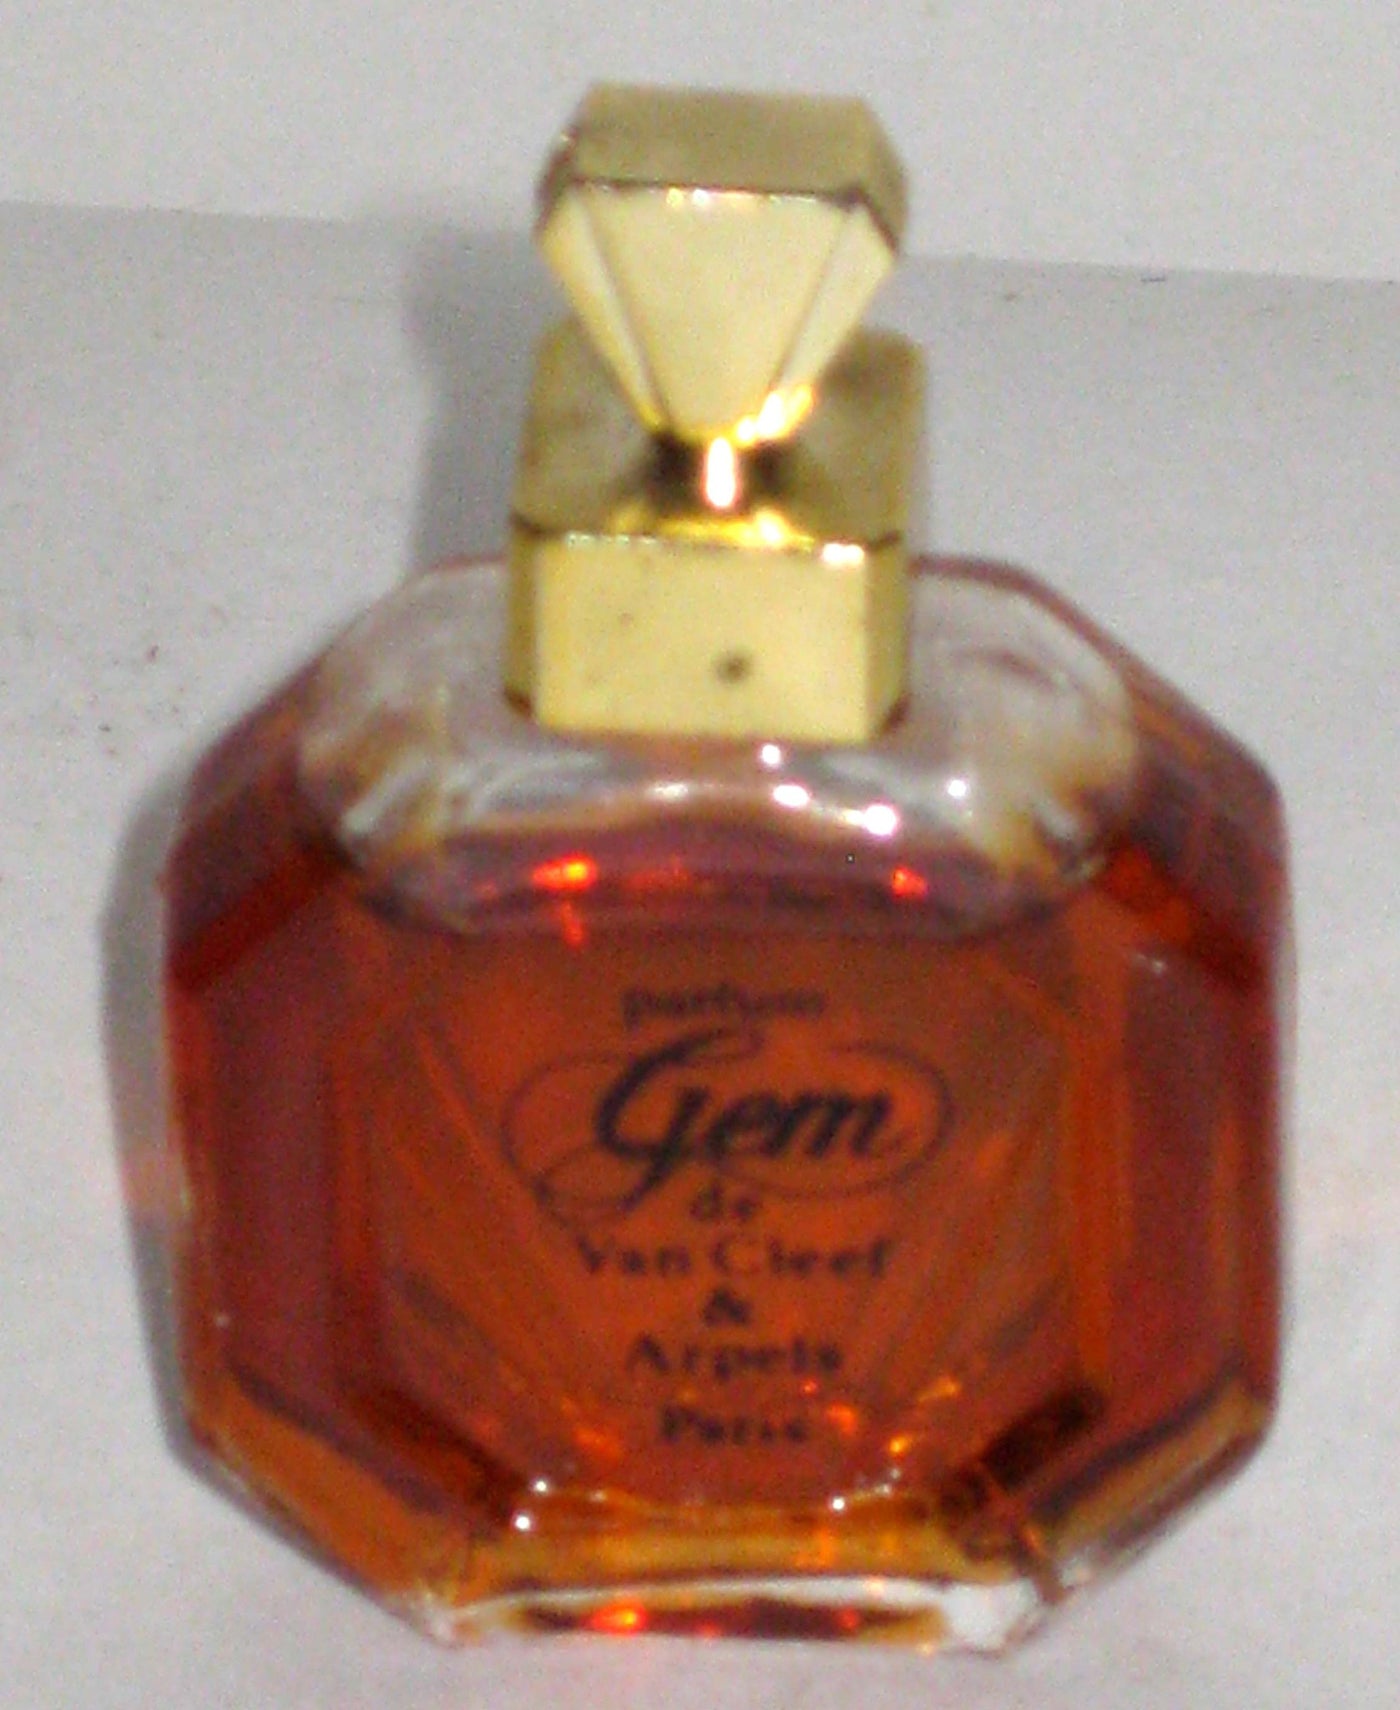 Van Cleef & Arpels Gems Parfum Mini